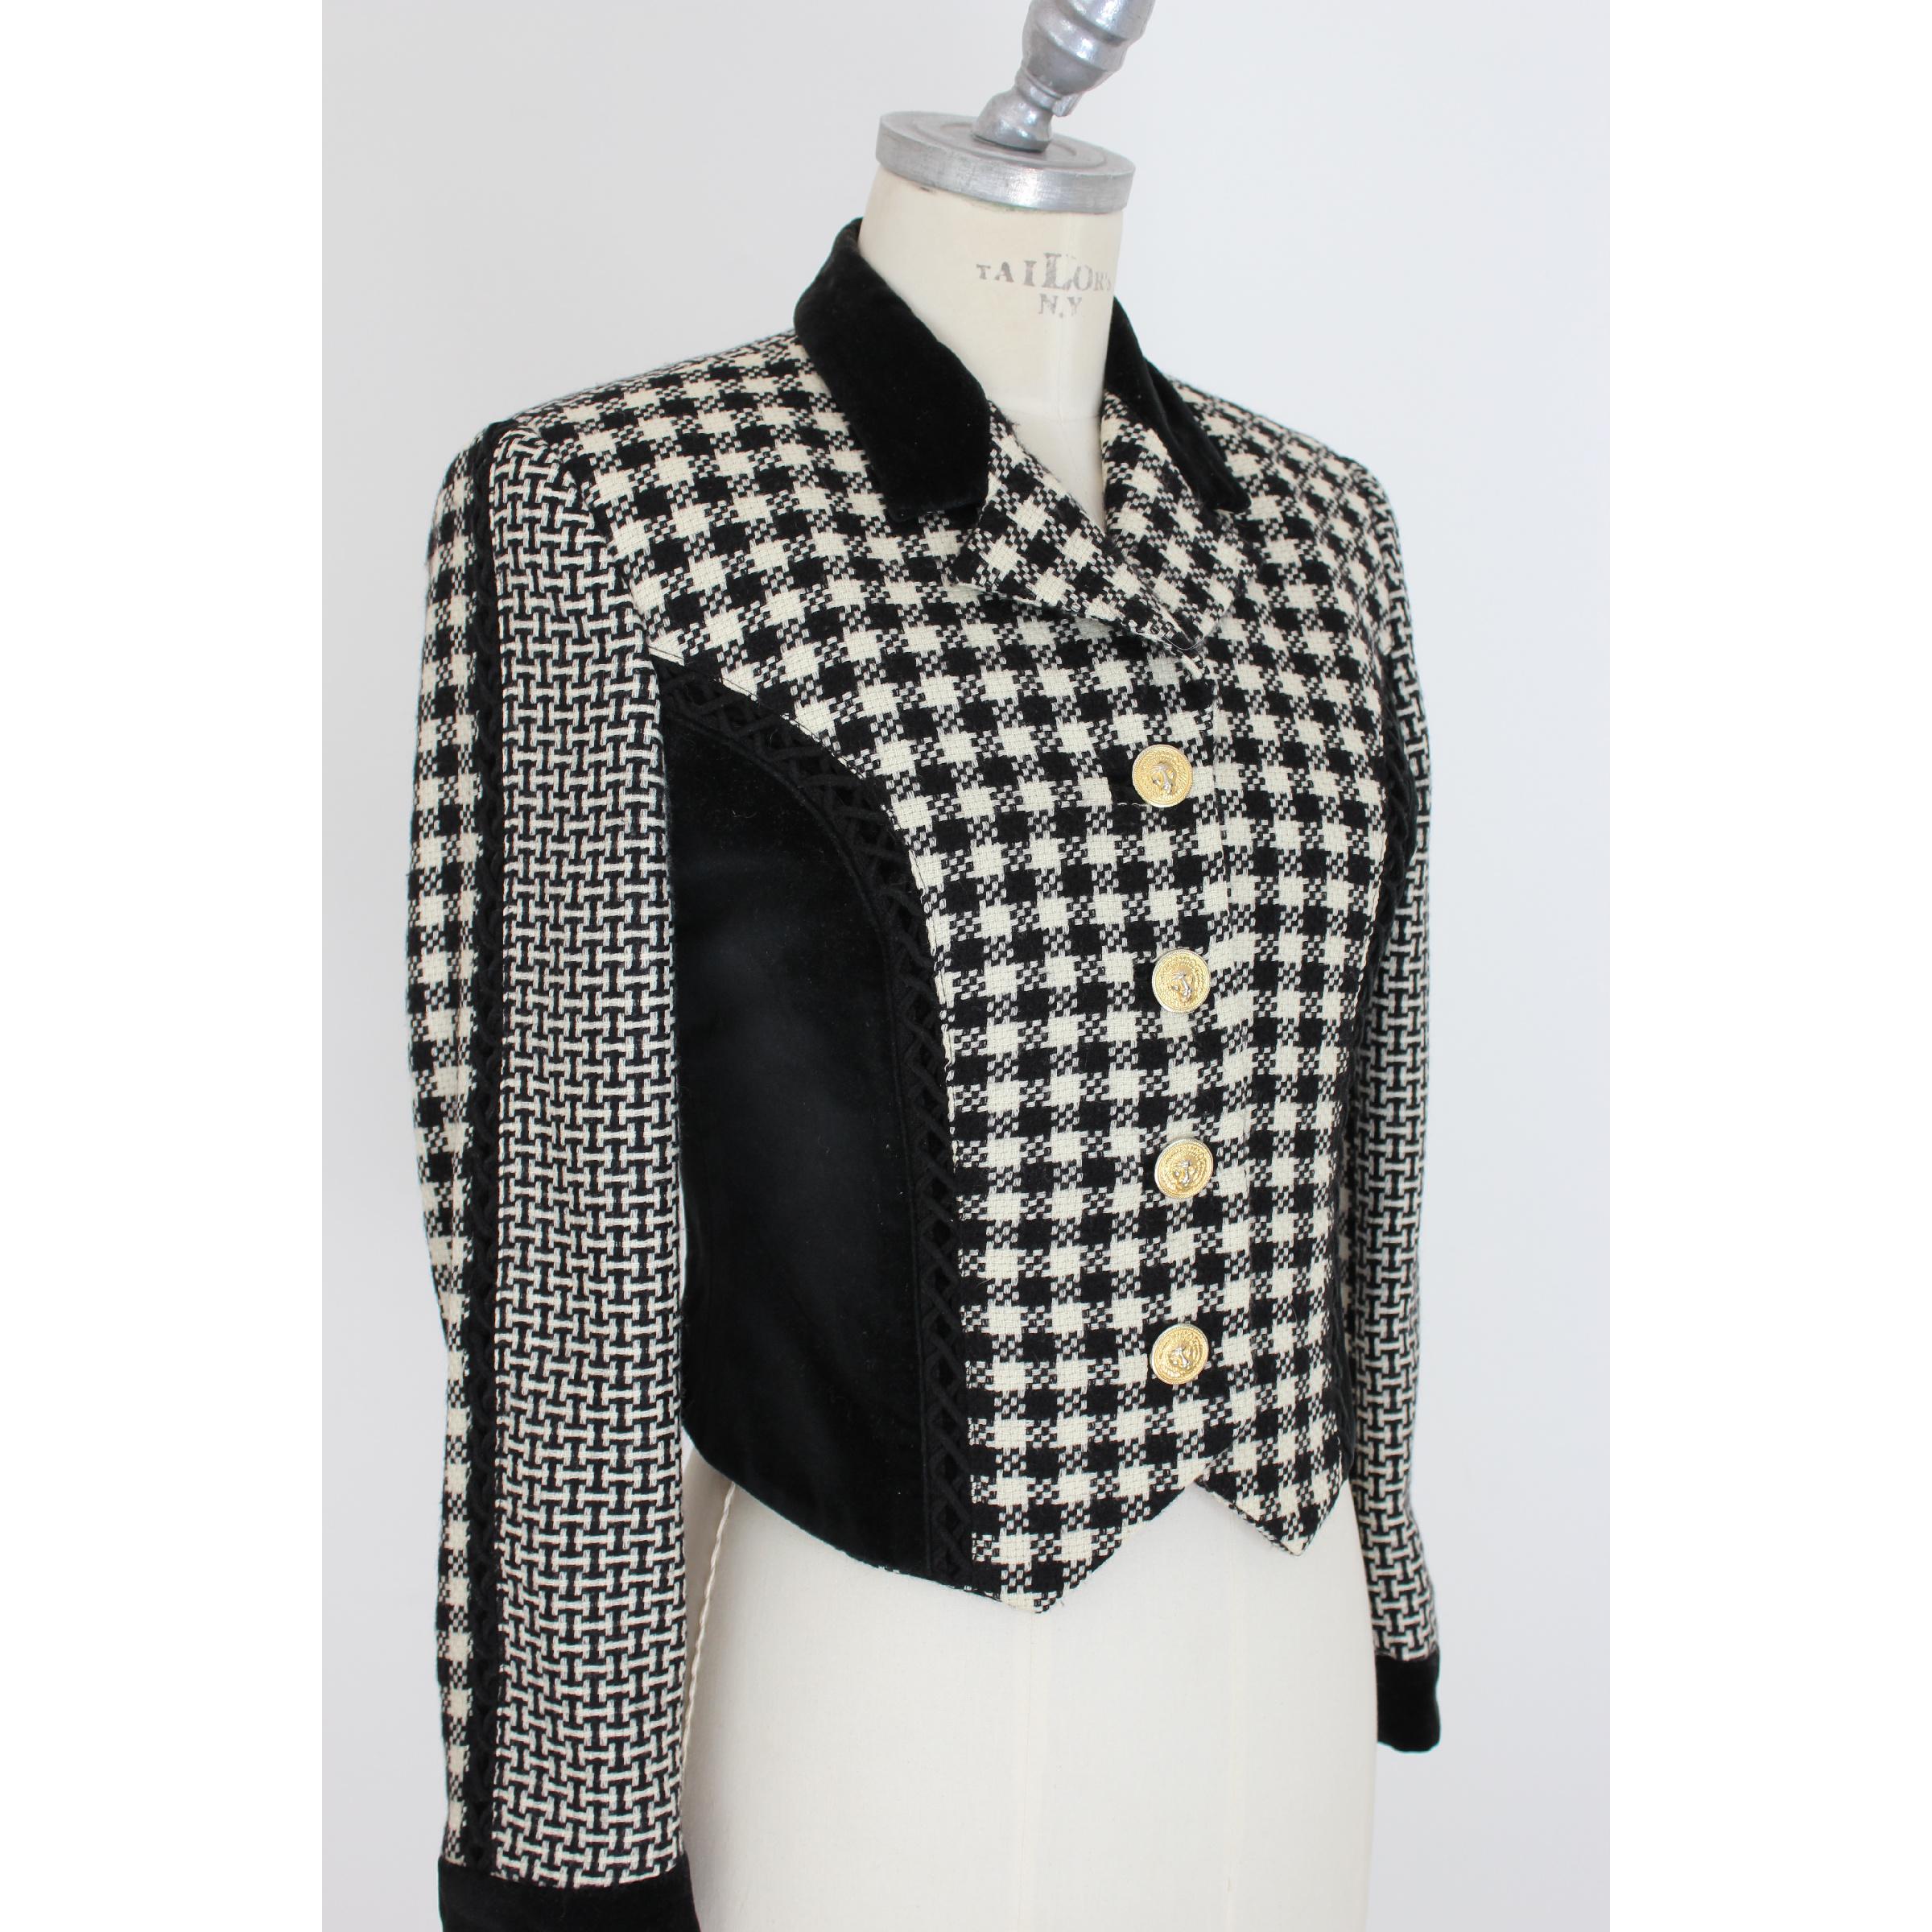 Gianni Versace Jacket Pied De Poule Wool Check Vintage Black White, 1980s 1